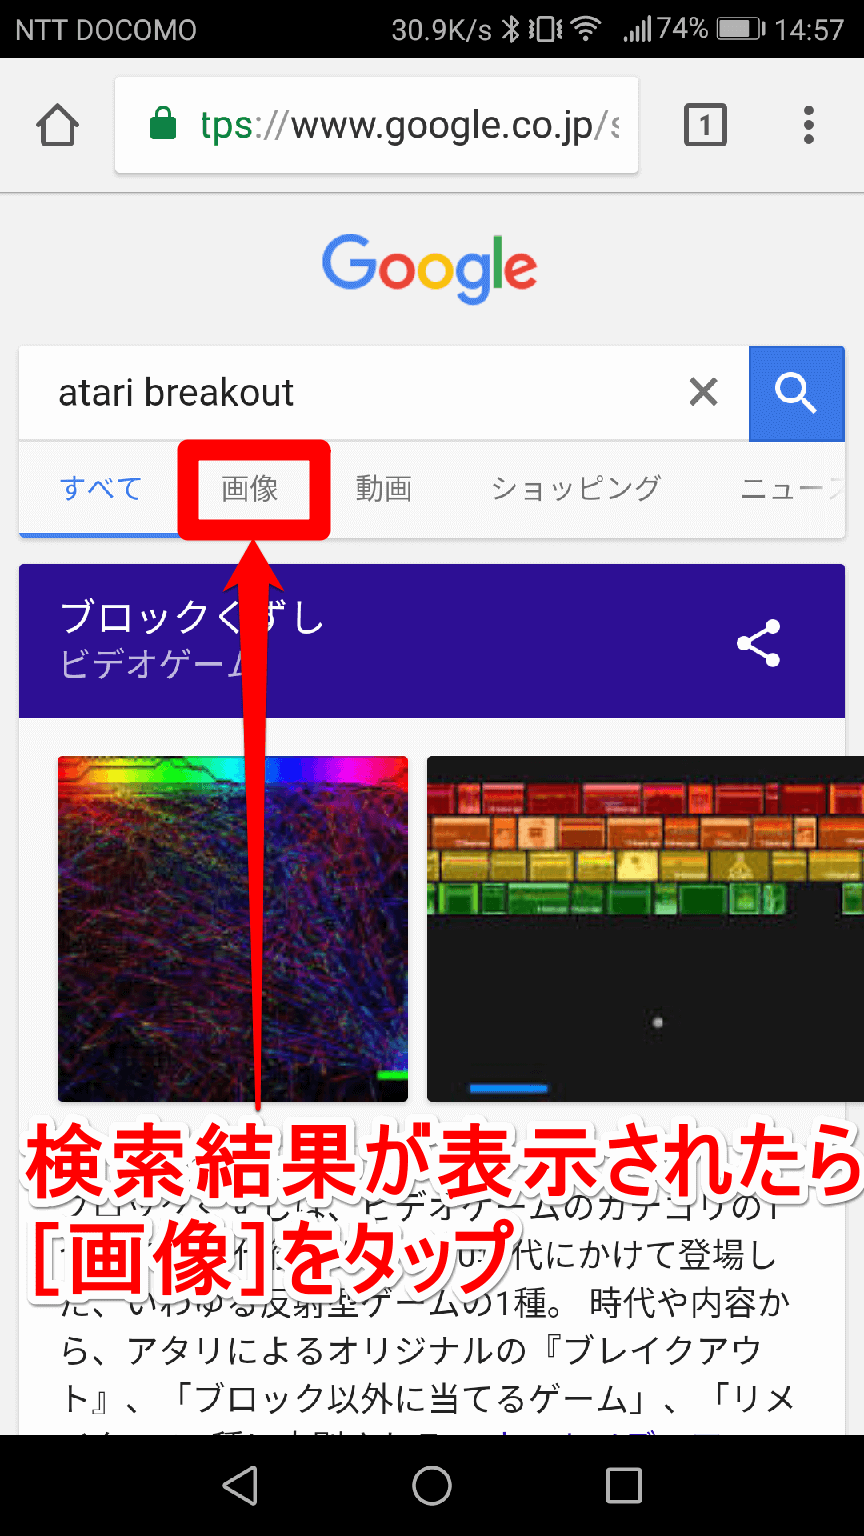 グーグルの「atari breakout」の検索結果画面